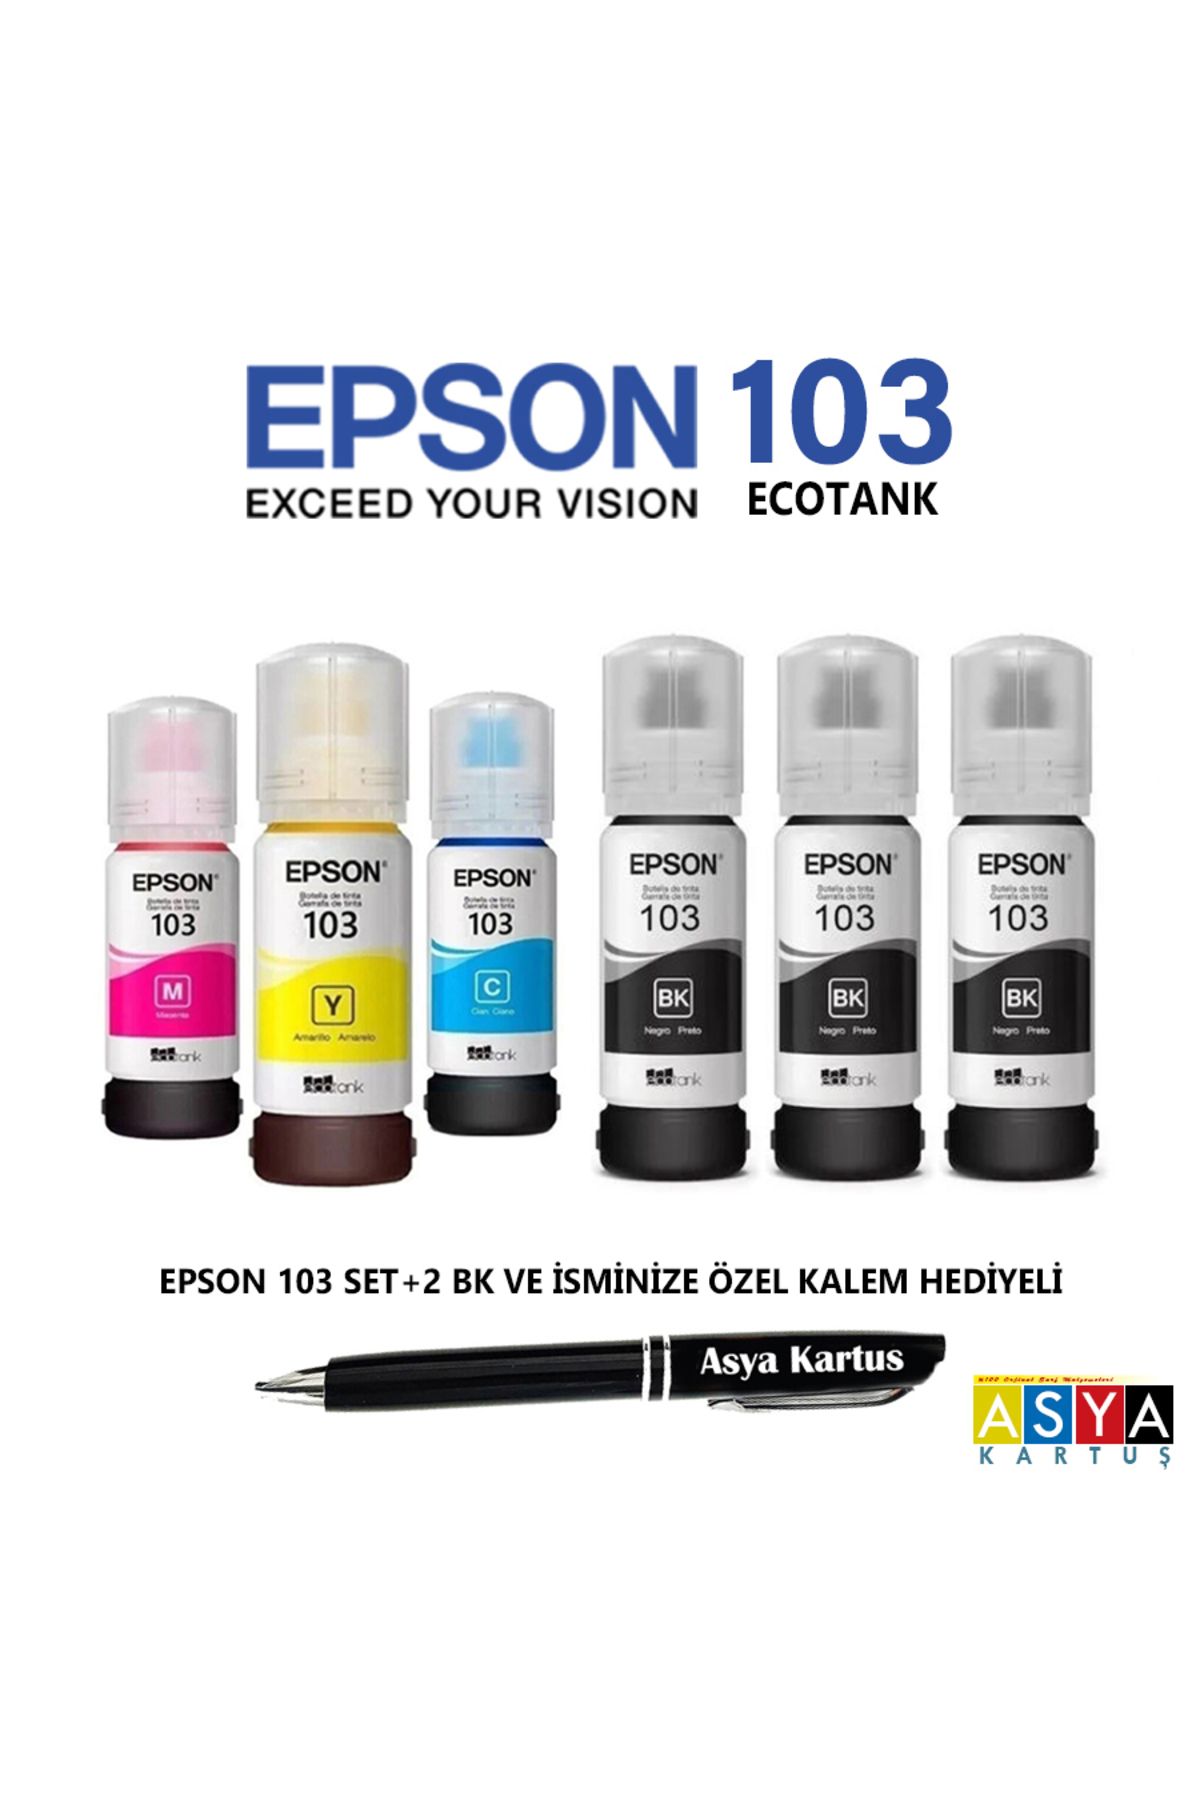 Epson 103 mürekkep 4 renk + 2 siyah mürekkep, Ecotank L3260 yazıcısı uyumlu avantajlı kartuş seti